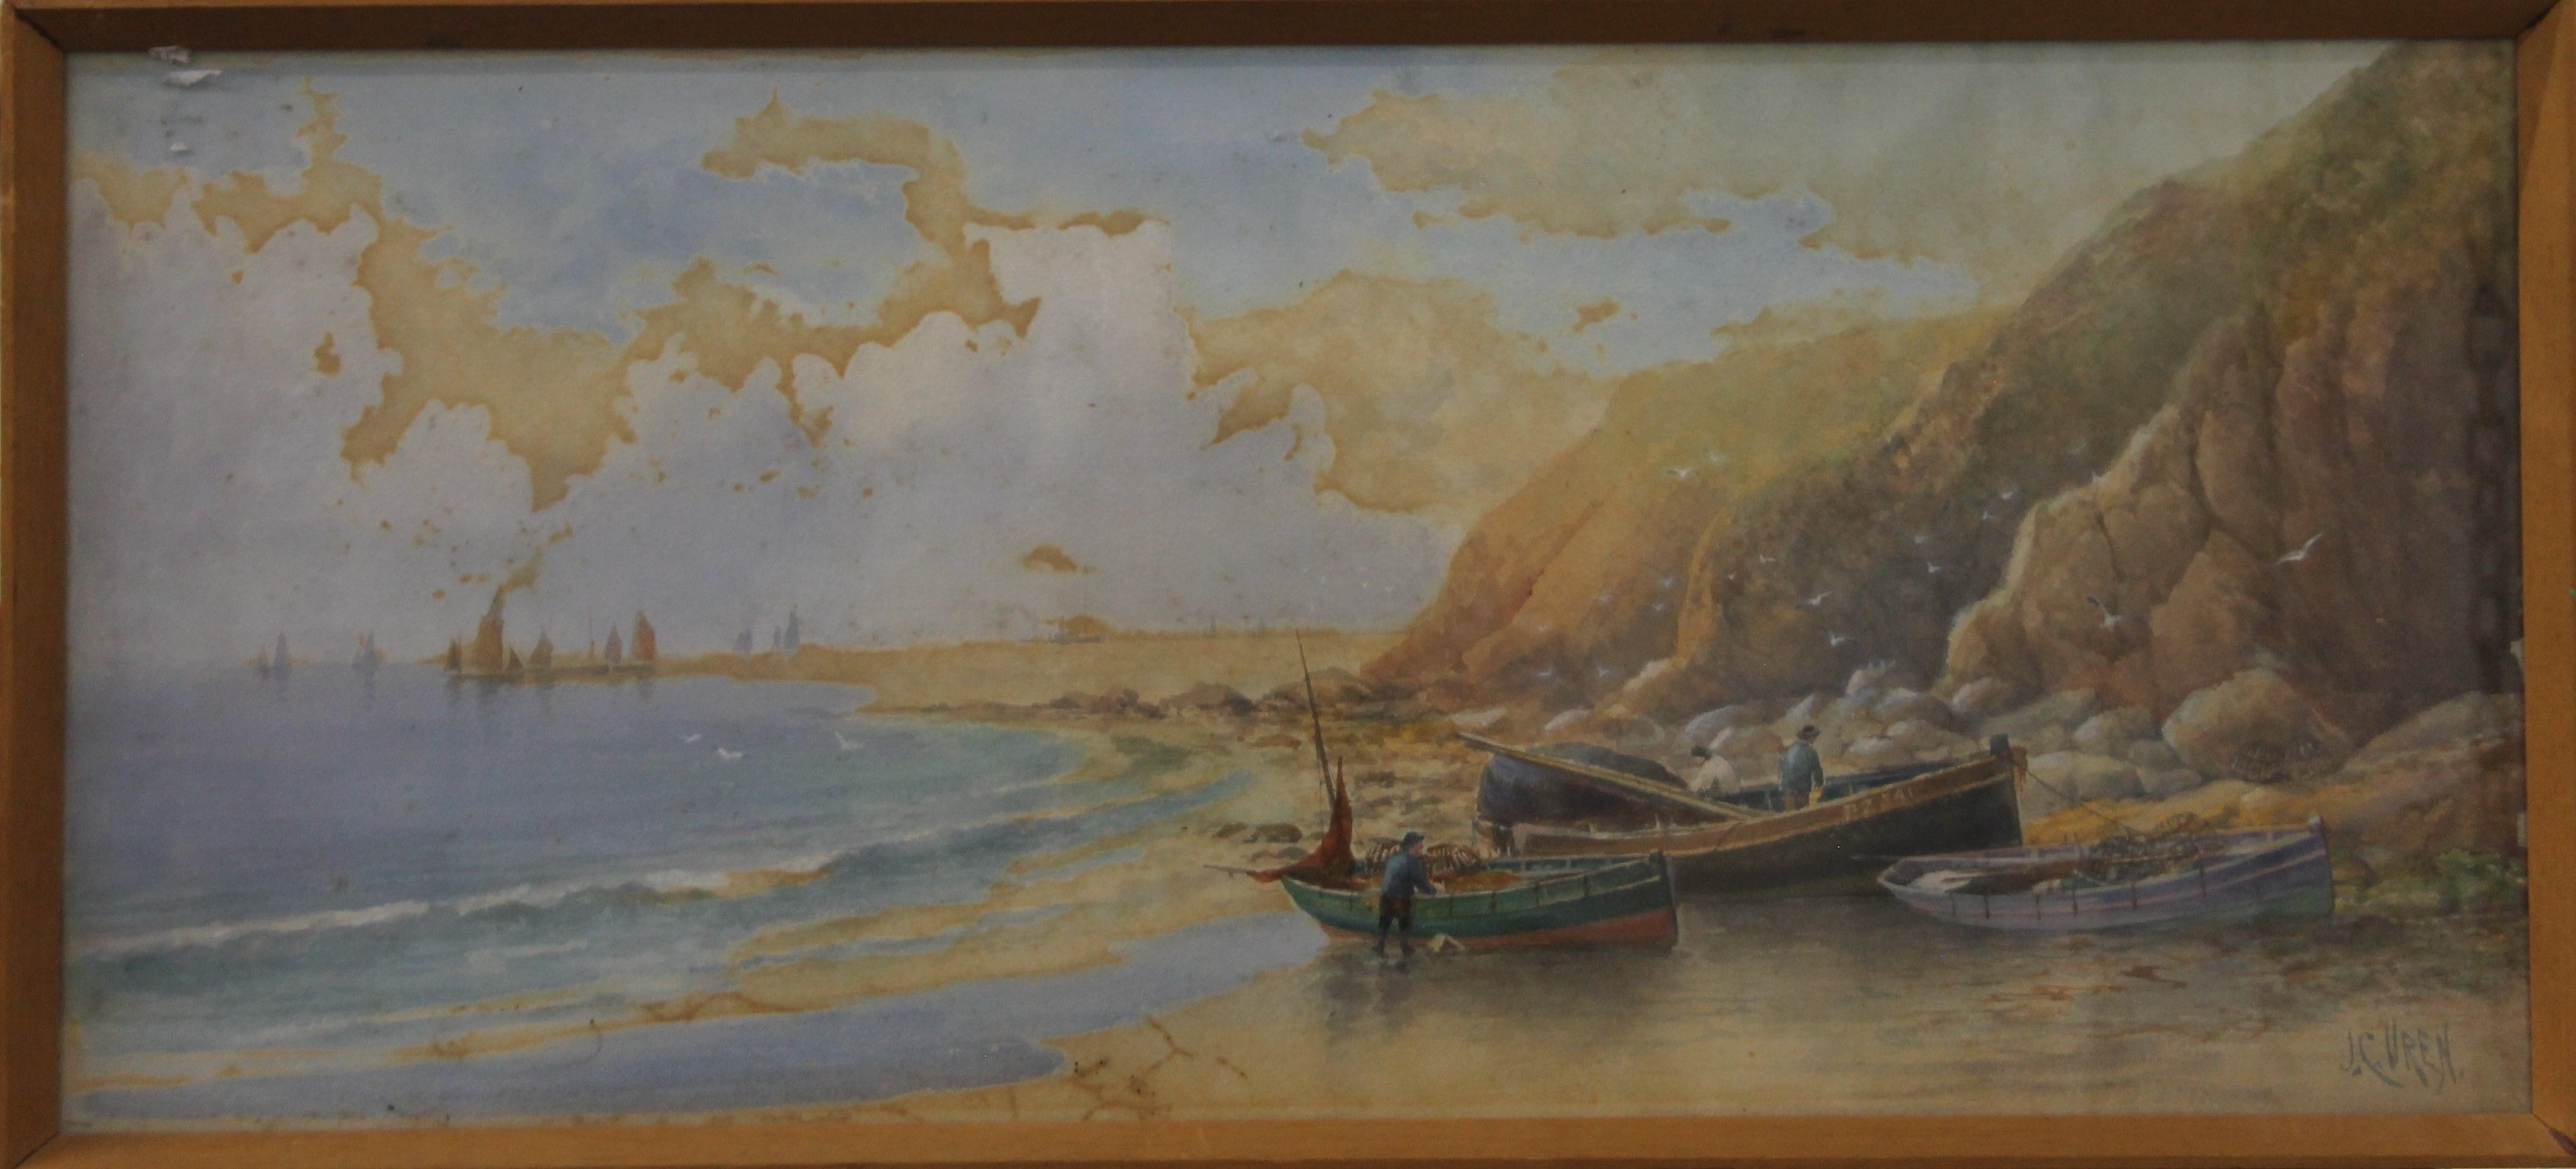 Beach Scene, watercolour, signed J C Uren, framed. 52.5 x 23 cm. - Image 2 of 3